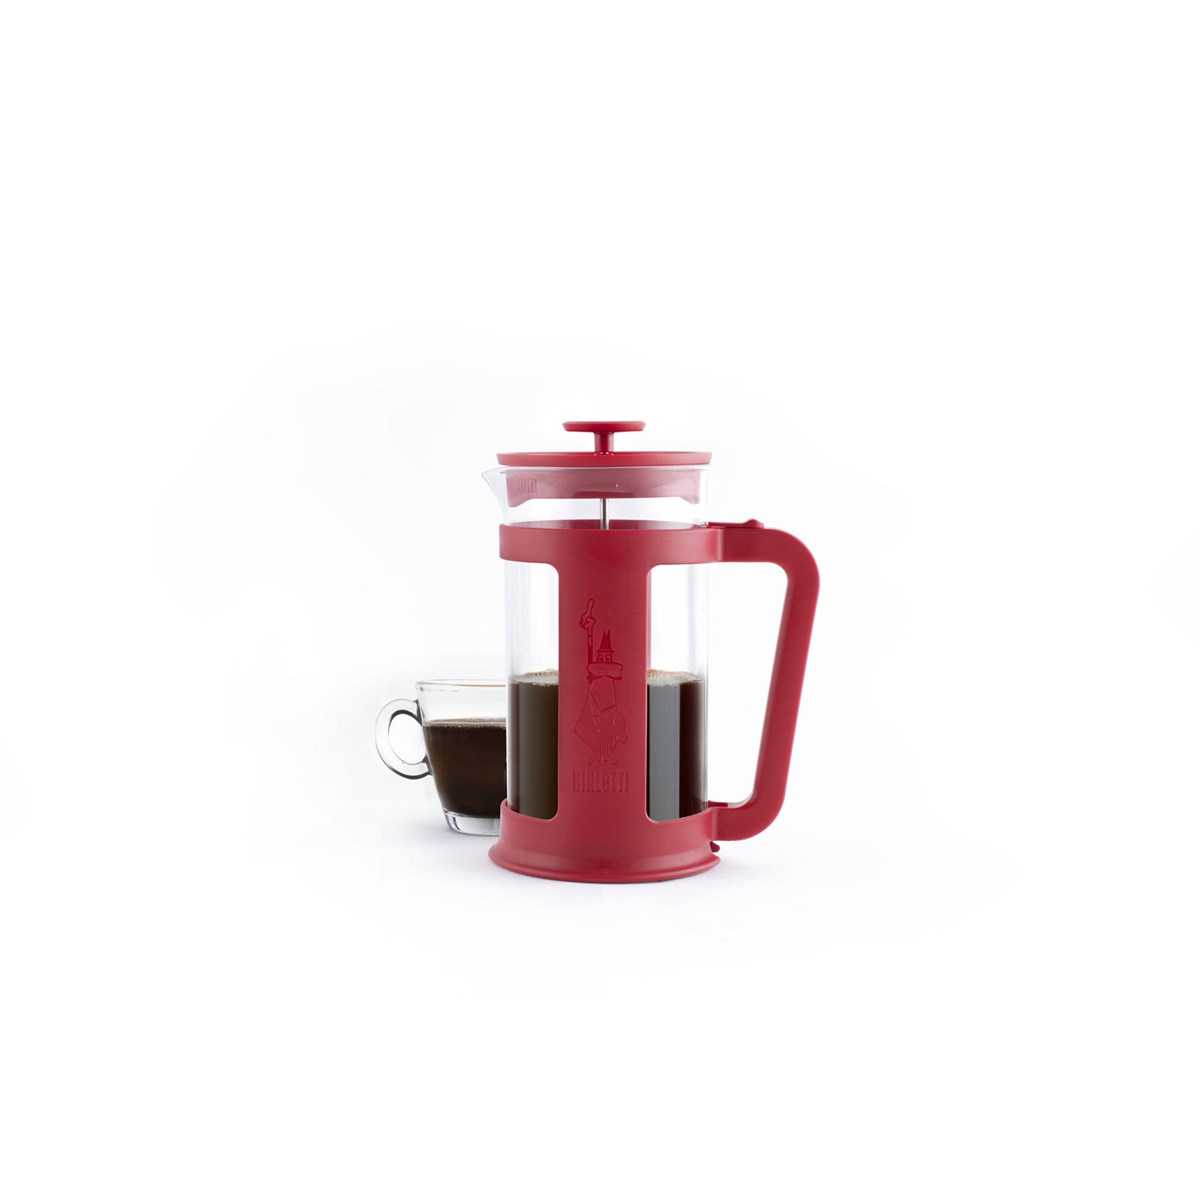 Bialetti Smart kaffepress 3 koppar 0,35L klar/röd